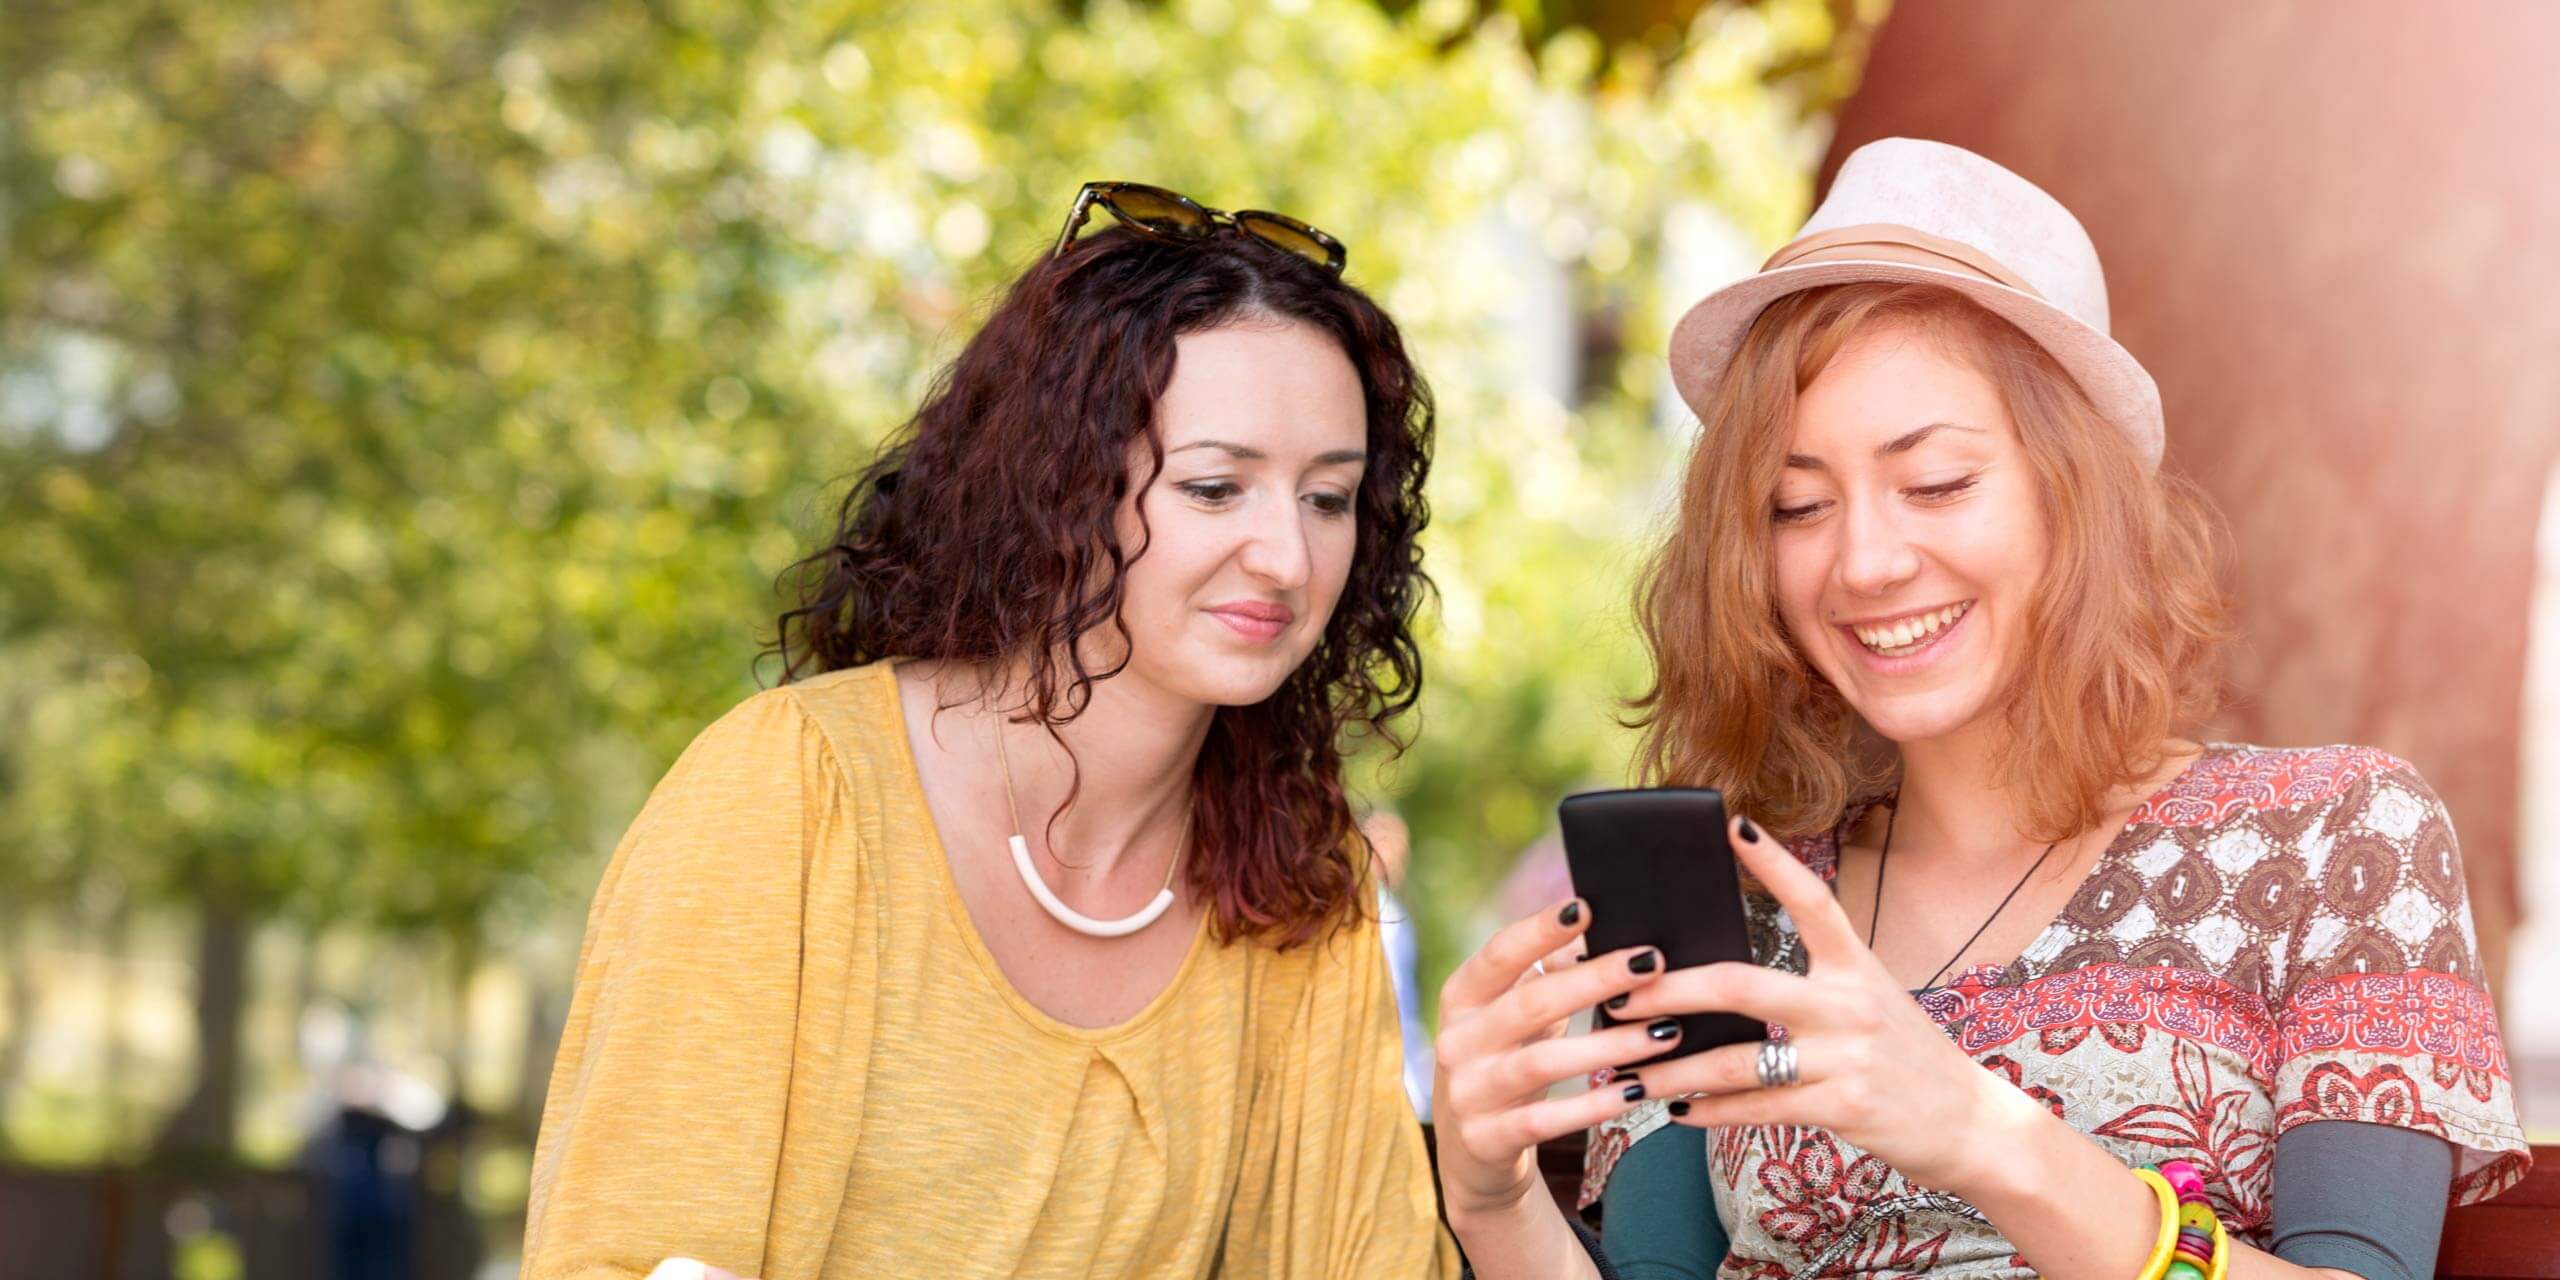 Zwei Frauen sitzen im Freien und lachen, während sie auf ein Smartphone schauen. Eine Frau mit lockigem dunklem Haar trägt ein gelbes Oberteil und eine Sonnenbrille auf dem Kopf. Die andere mit hellbraunem Haar und Hut trägt ein buntes Hemd und mehrere Ringe. Im Hintergrund sind Bäume und Sonnenlicht zu sehen.